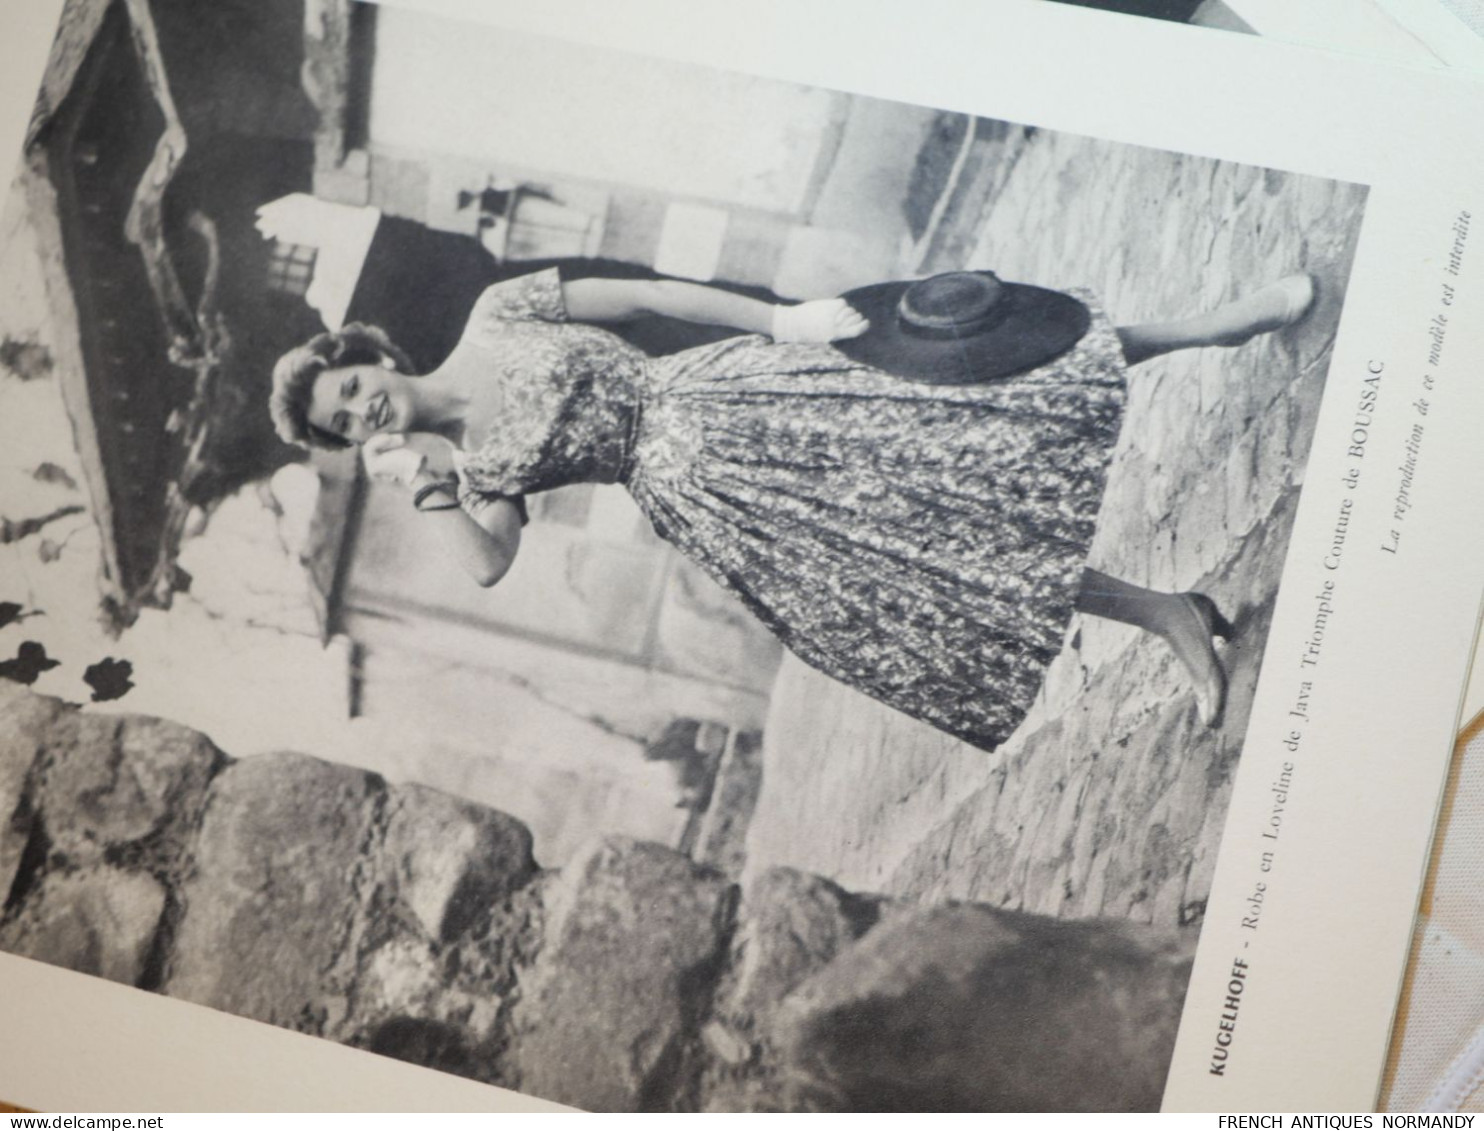 Très rare plaquette mode défilé collection du couturier PIERRE BILLET PIN-UP GIRLS saison printemps été 1956